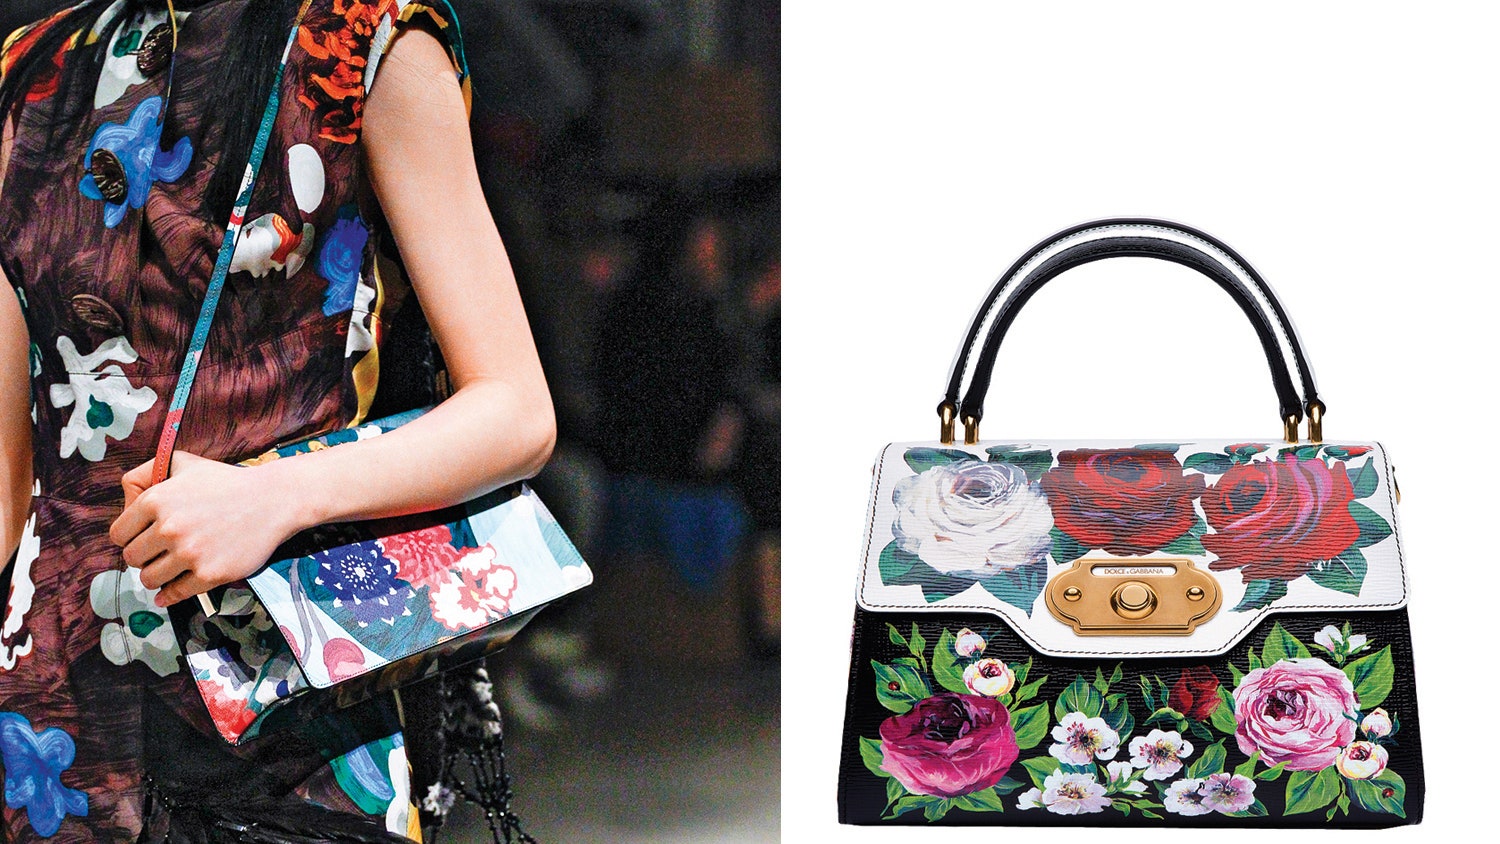 Модные расписные сумки модели от Prada Valentino Garavani Emilio Pucci Etro Dolce  Gabbana